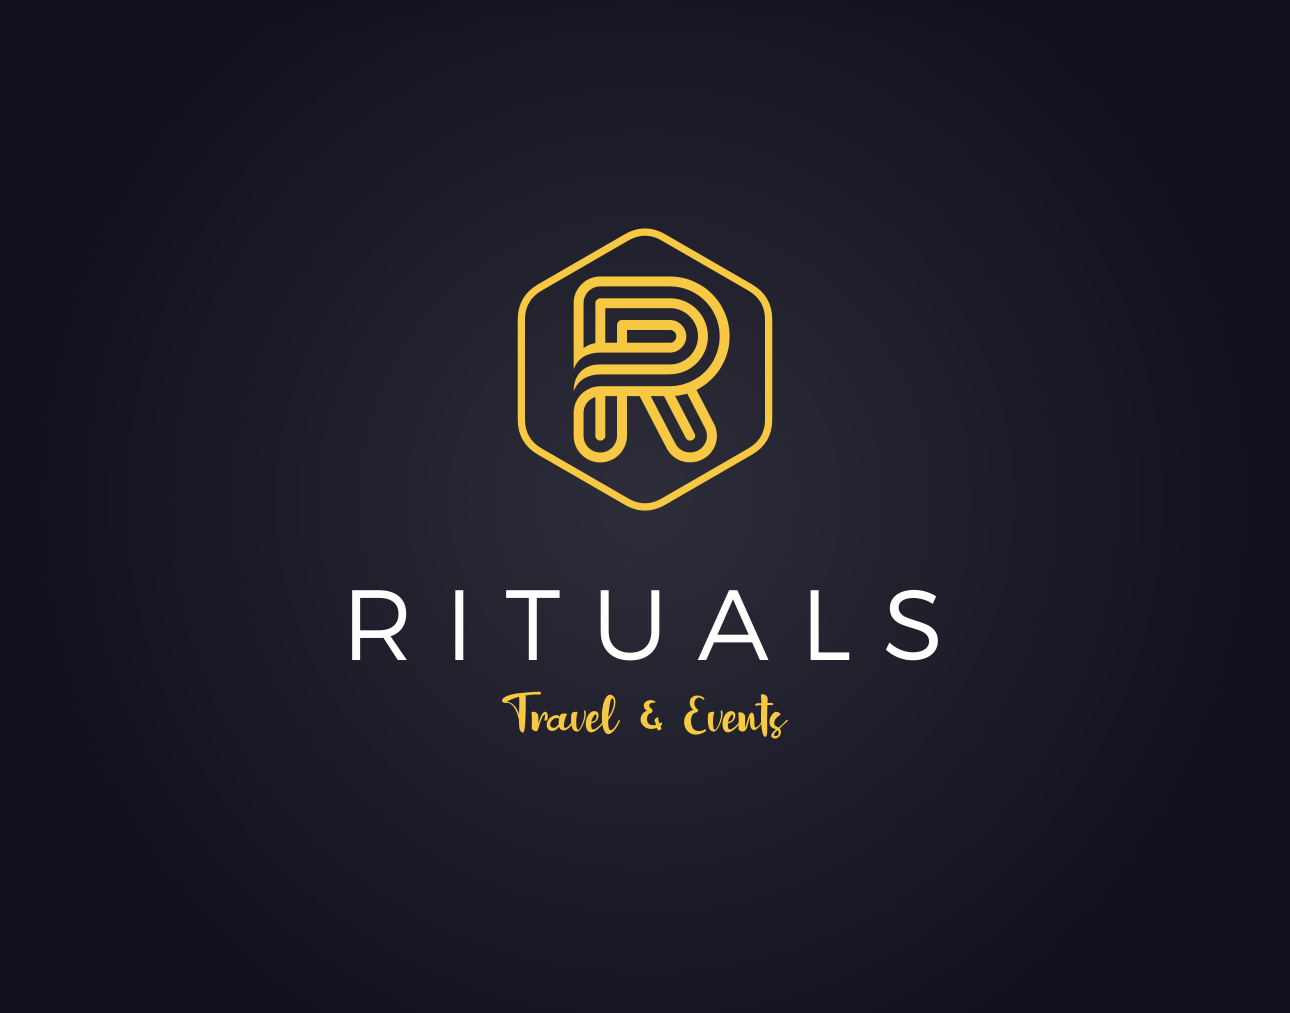 Rituals Premium Travel